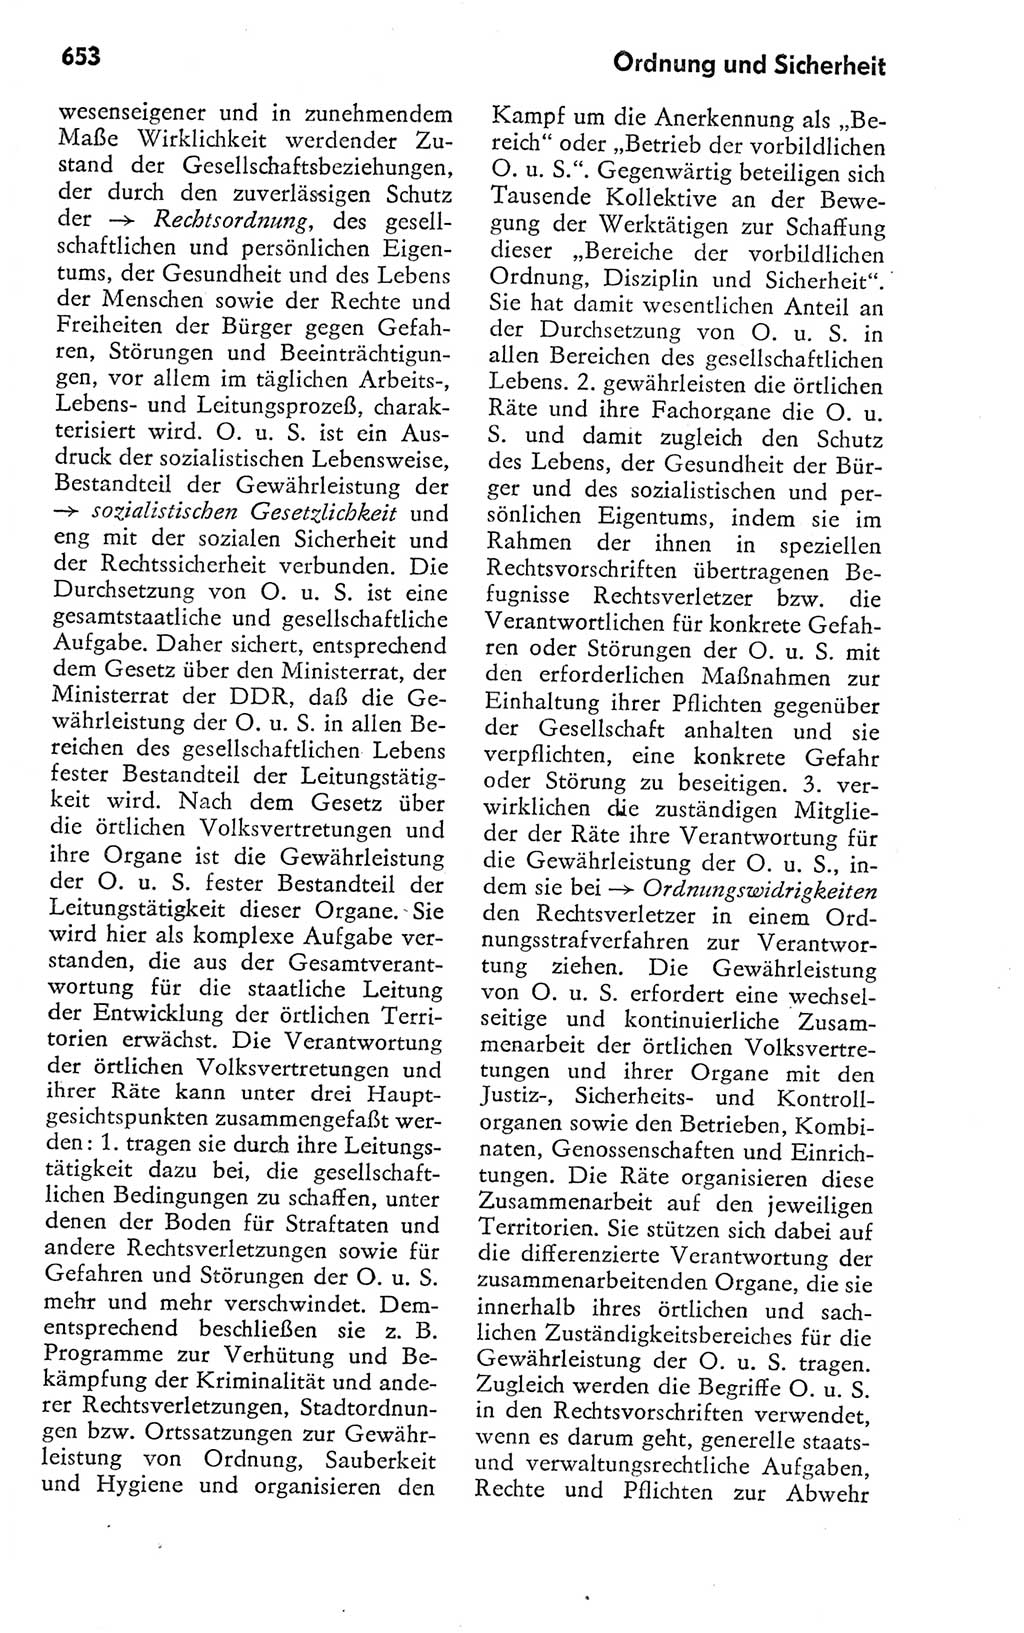 Kleines politisches Wörterbuch [Deutsche Demokratische Republik (DDR)] 1978, Seite 653 (Kl. pol. Wb. DDR 1978, S. 653)